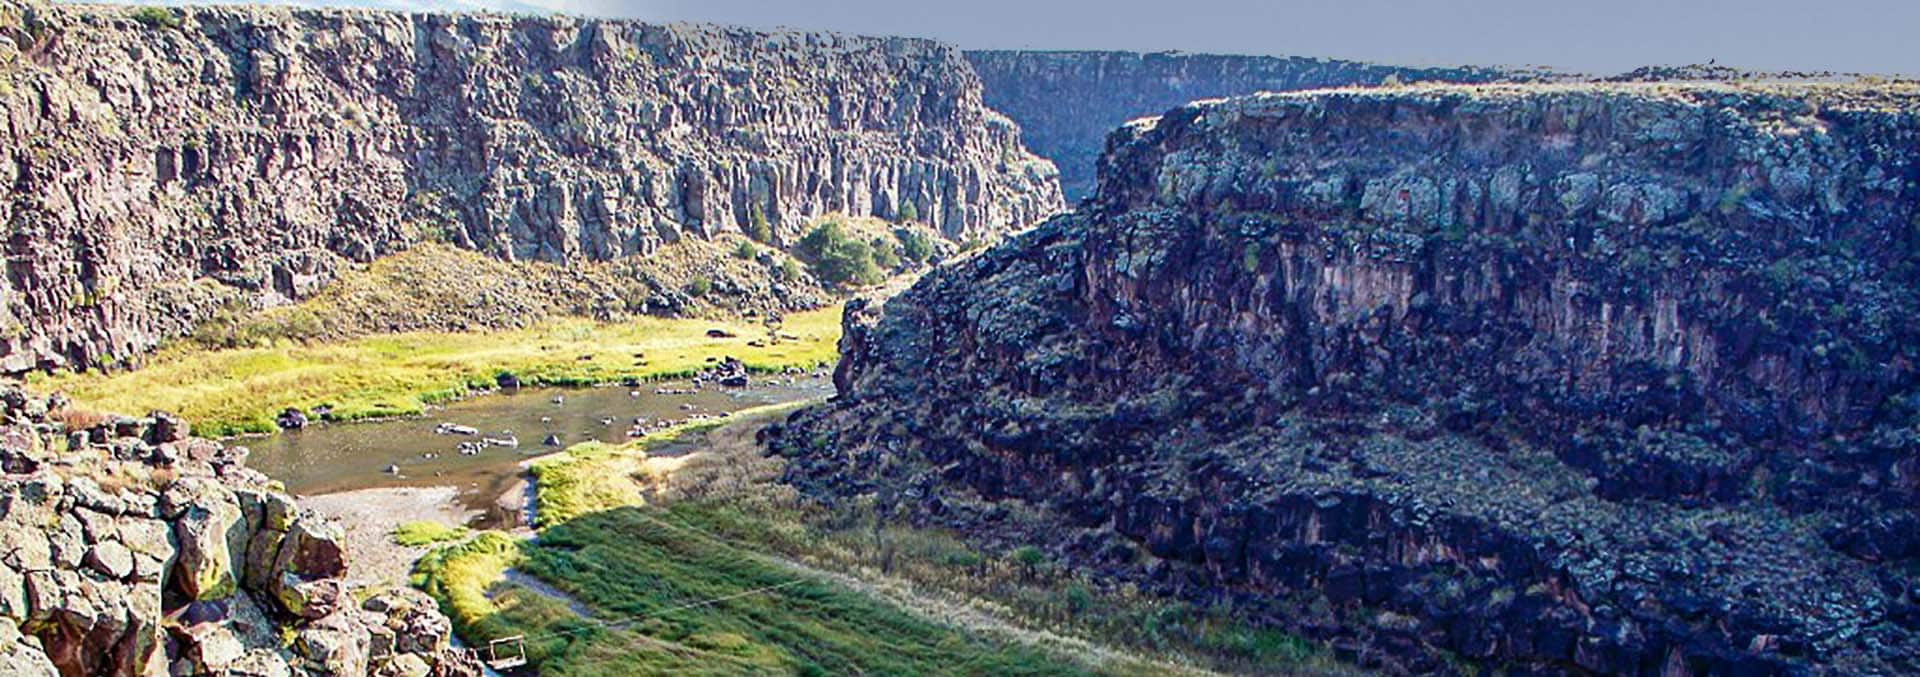 colorado river property for sale rio grande del norte ranch